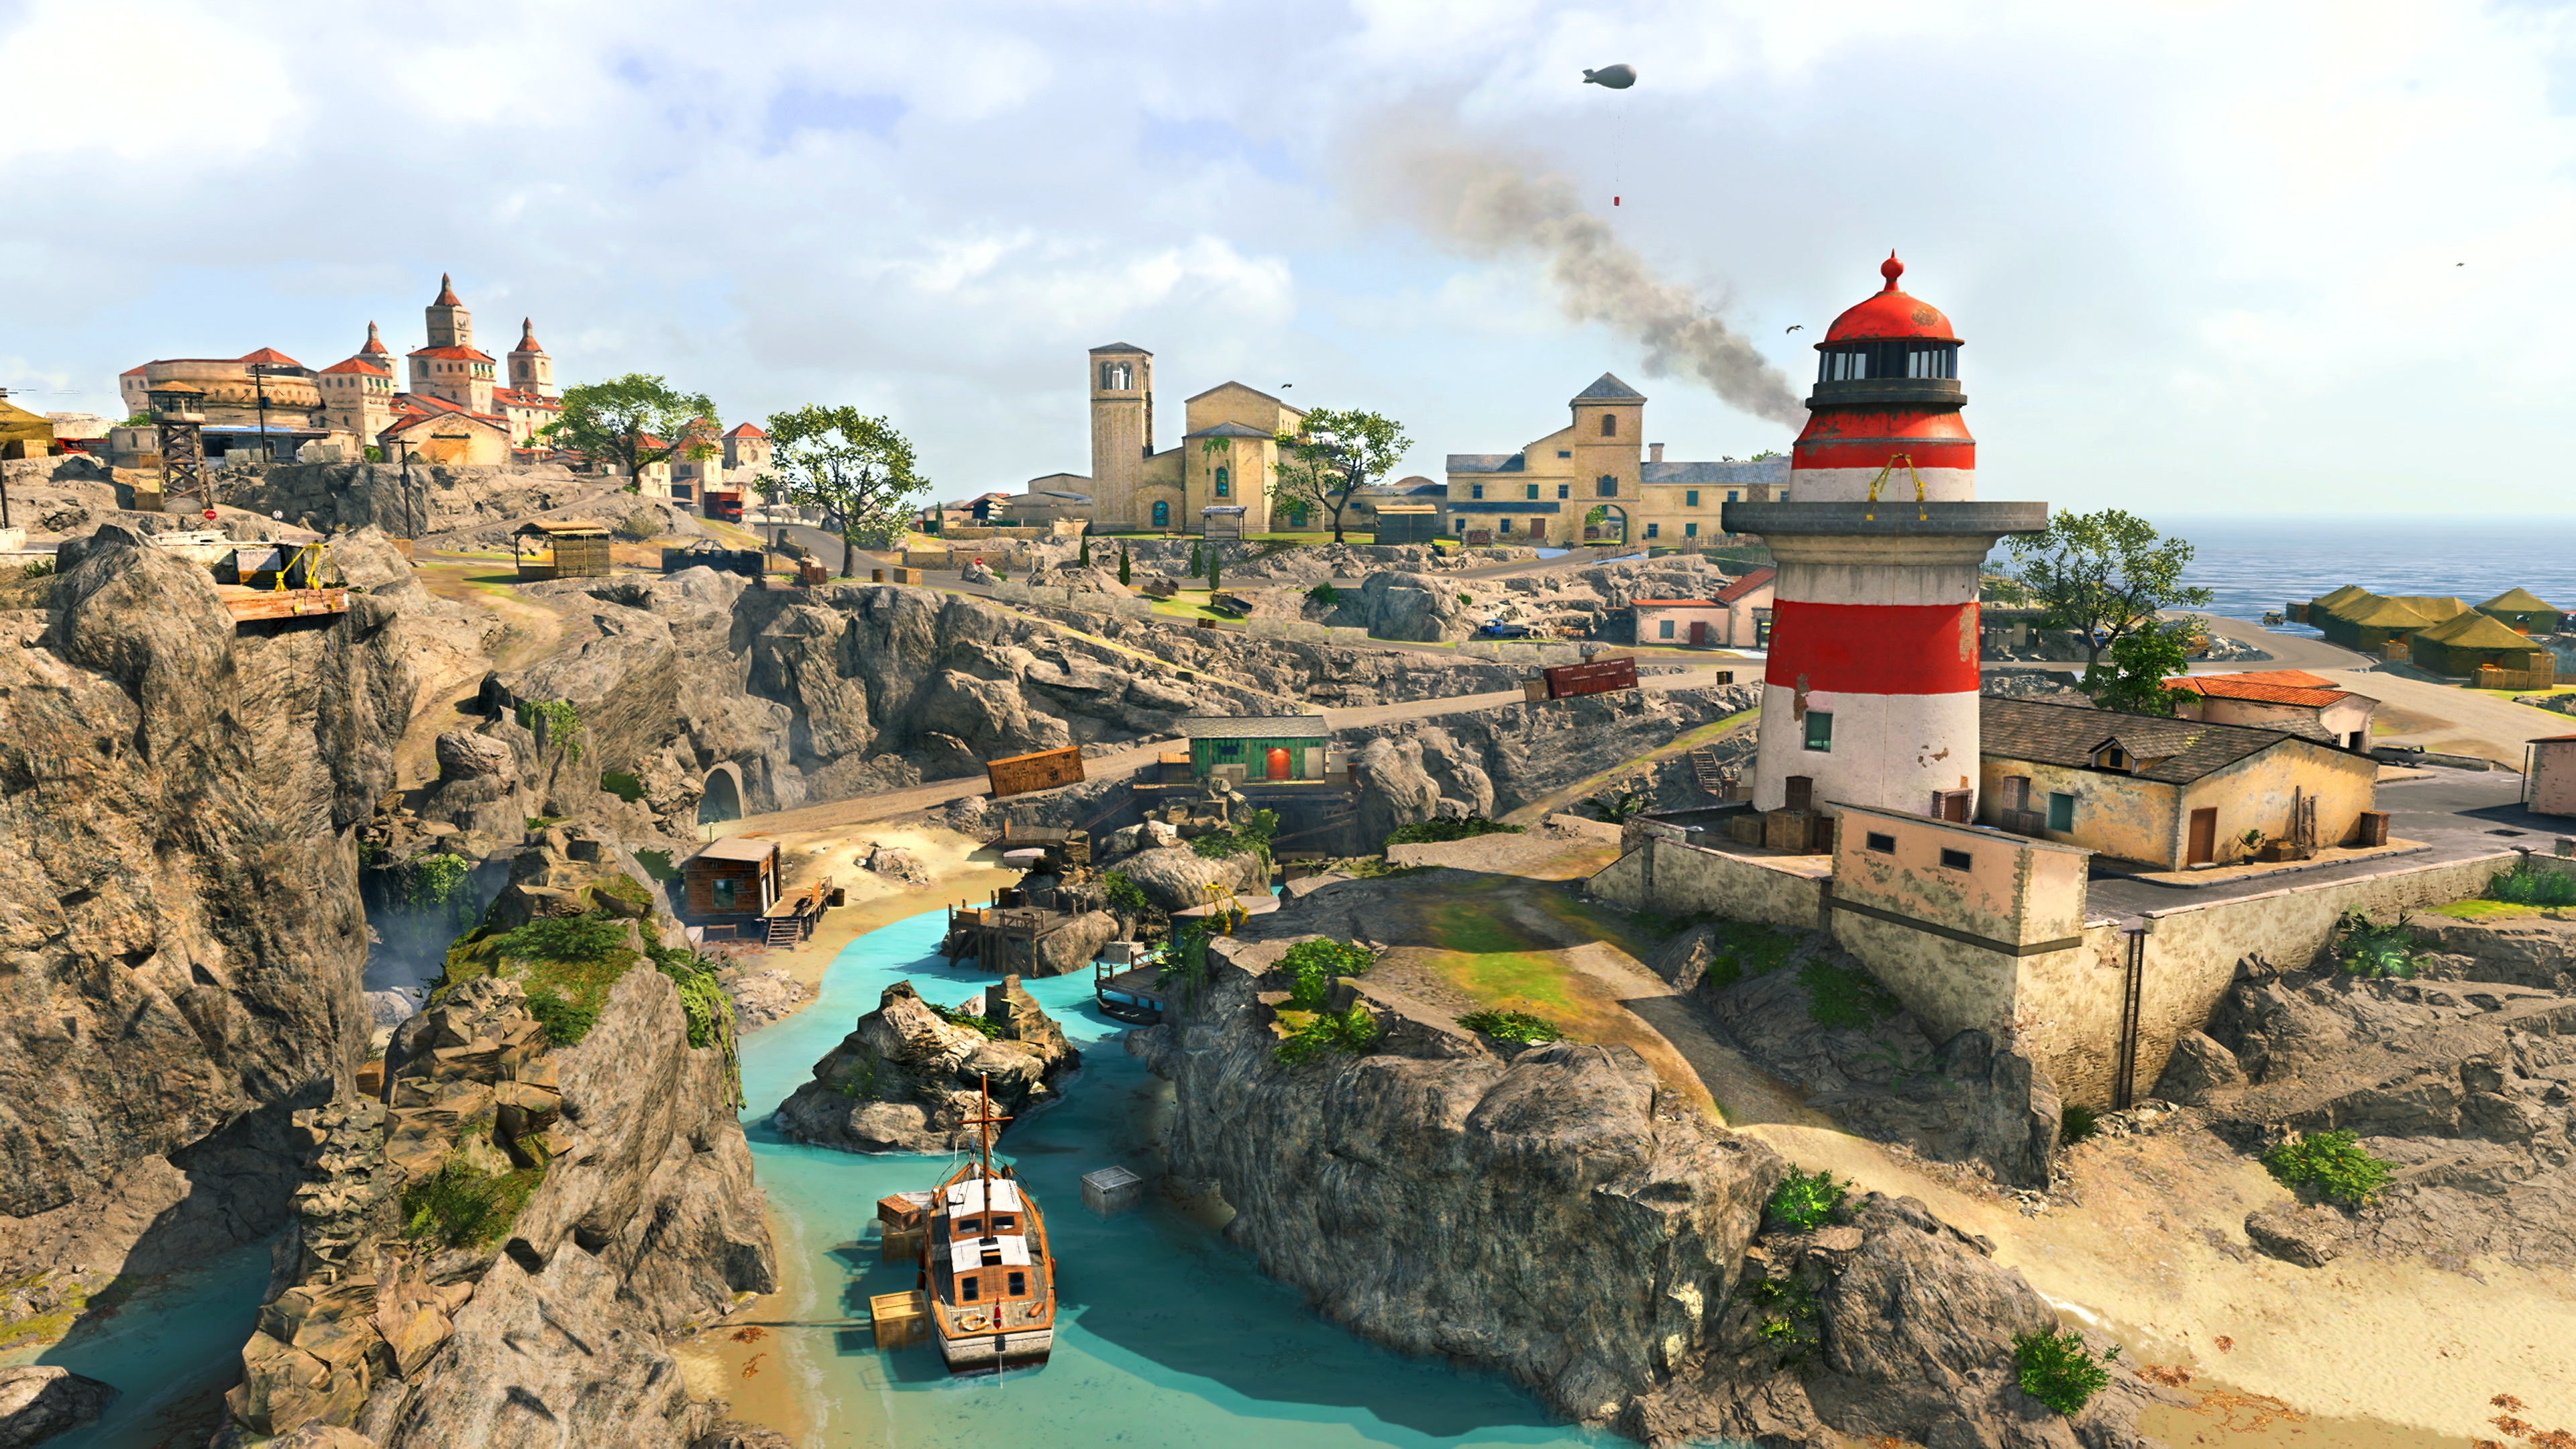 Call of Duty Warzonen kuvakaappaus, jossa näkyy uusi Fortune's Keep -kartta ja punavalkoinen majakka